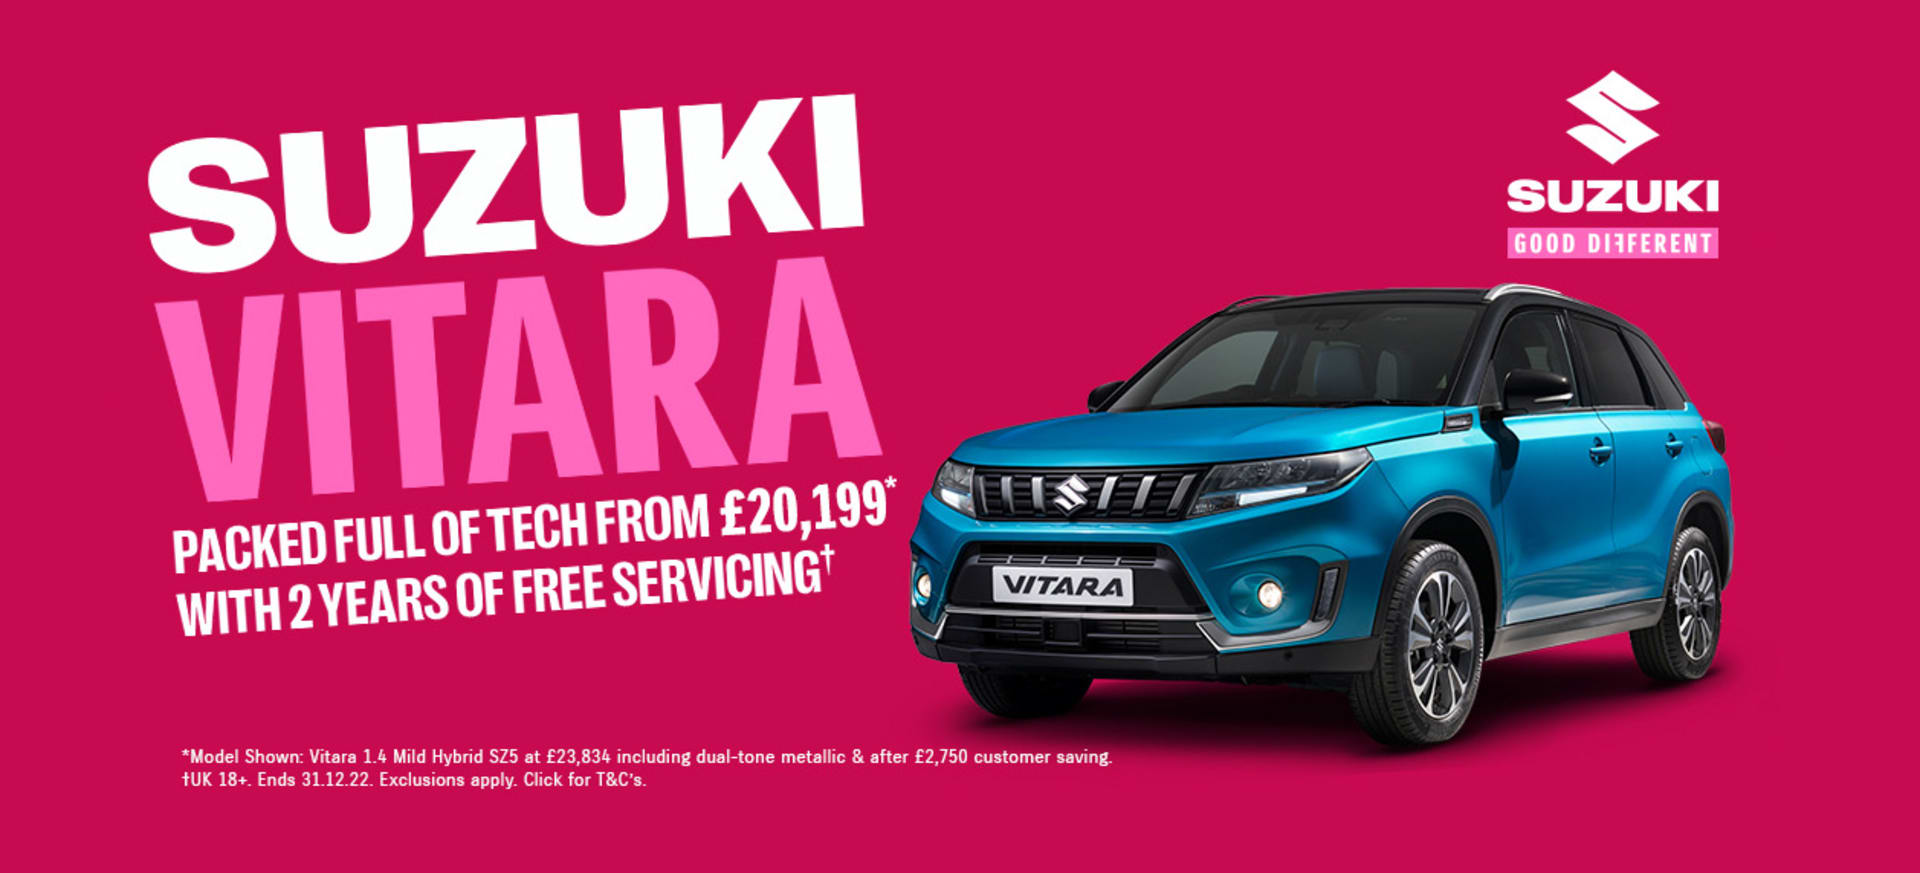 Suzuki Vitara 2 Years Free Servicing Offer